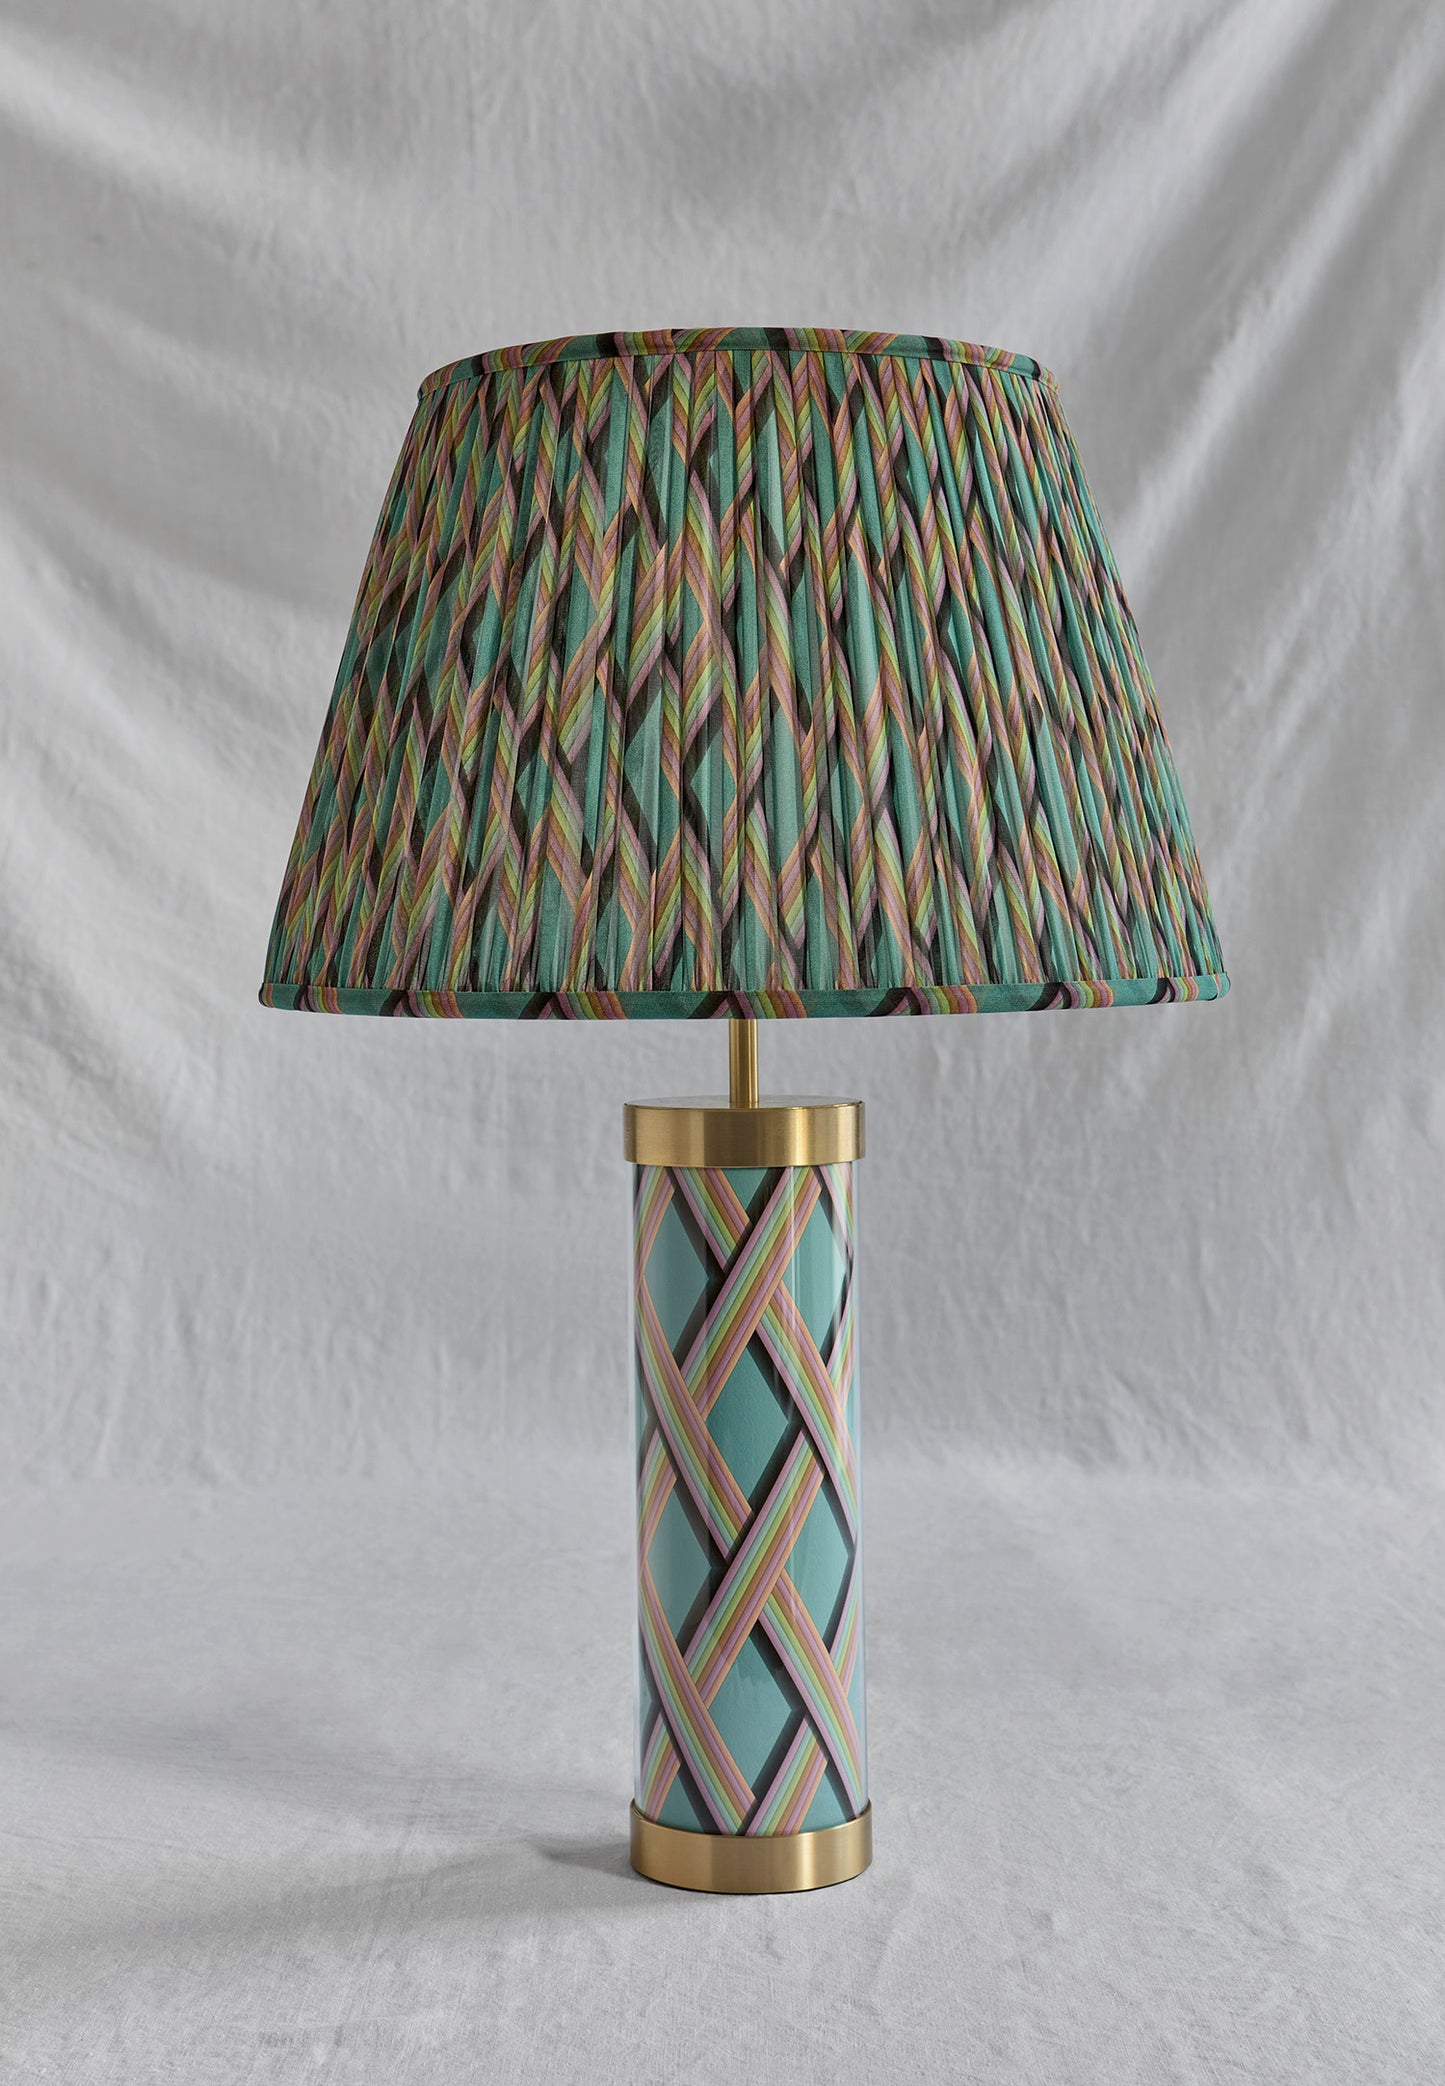 Trellis Work - Light Teal Glass & Brass Lamp